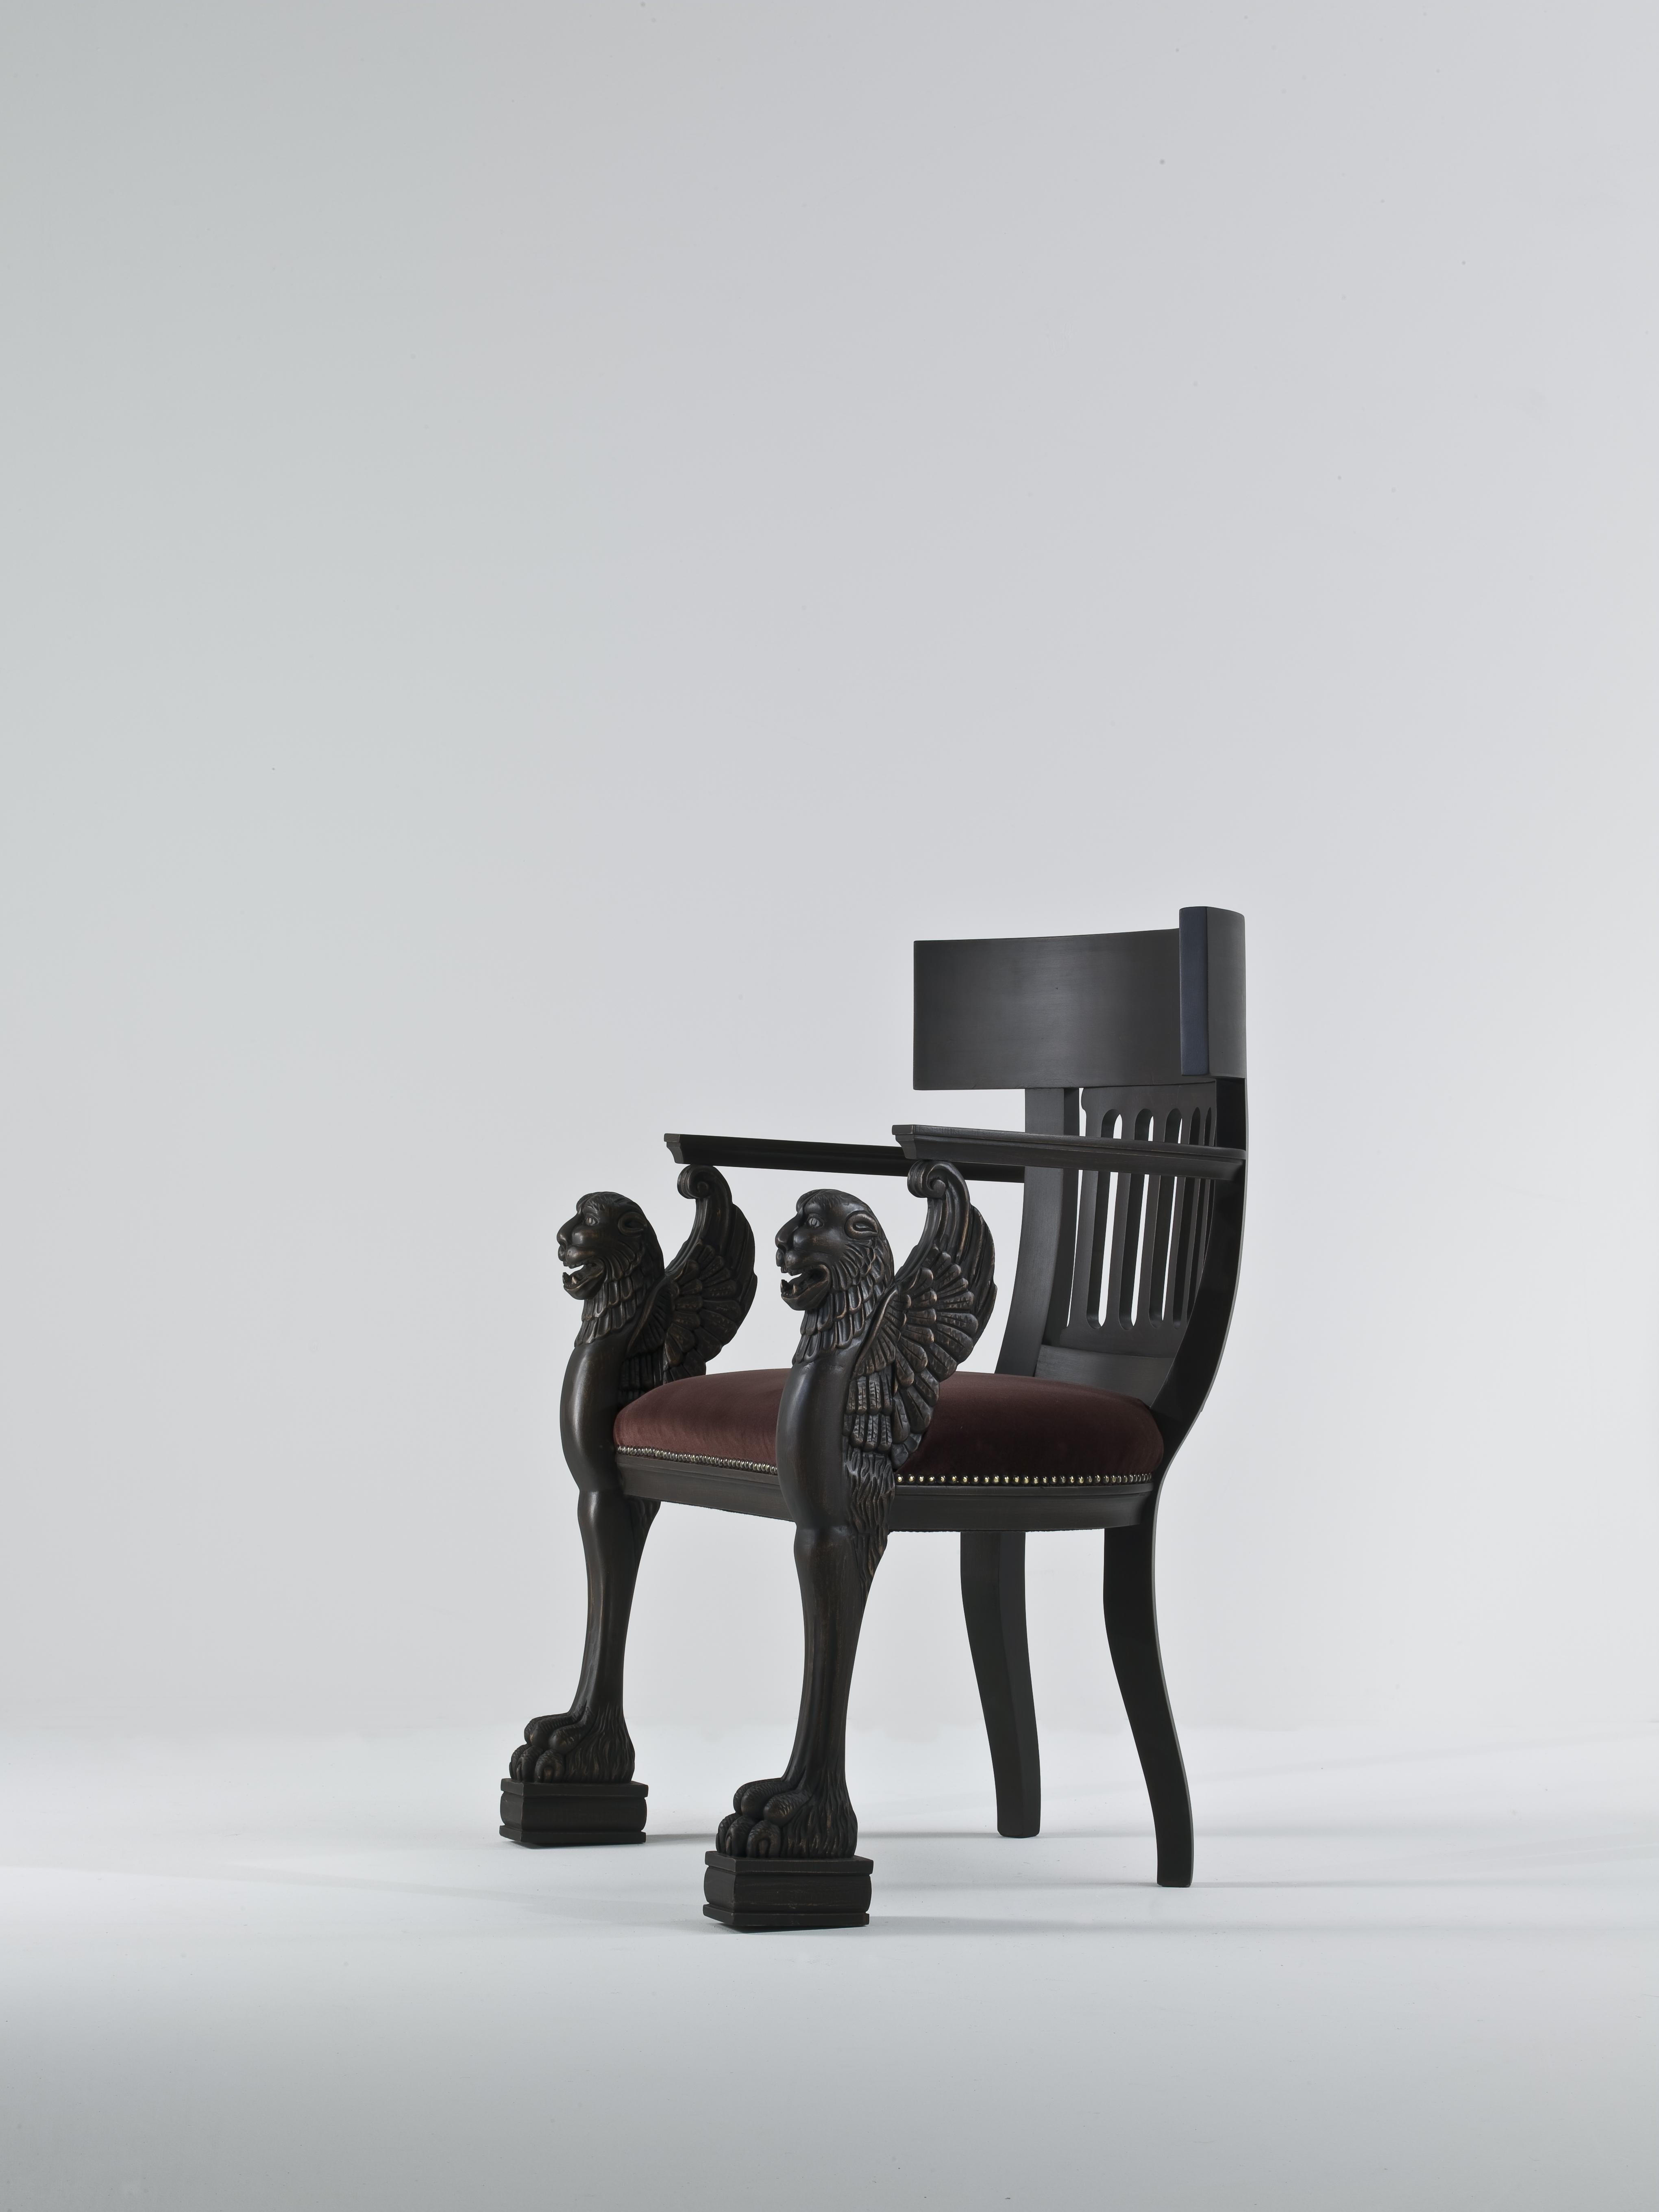 Le fauteuil Dagobert est un chef-d'œuvre d'artisanat, méticuleusement sculpté à la main dans du bois massif pour dégager une élégance intemporelle et un charme royal. Sa présence majestueuse est accentuée par les exquis décors de griffon qui ornent